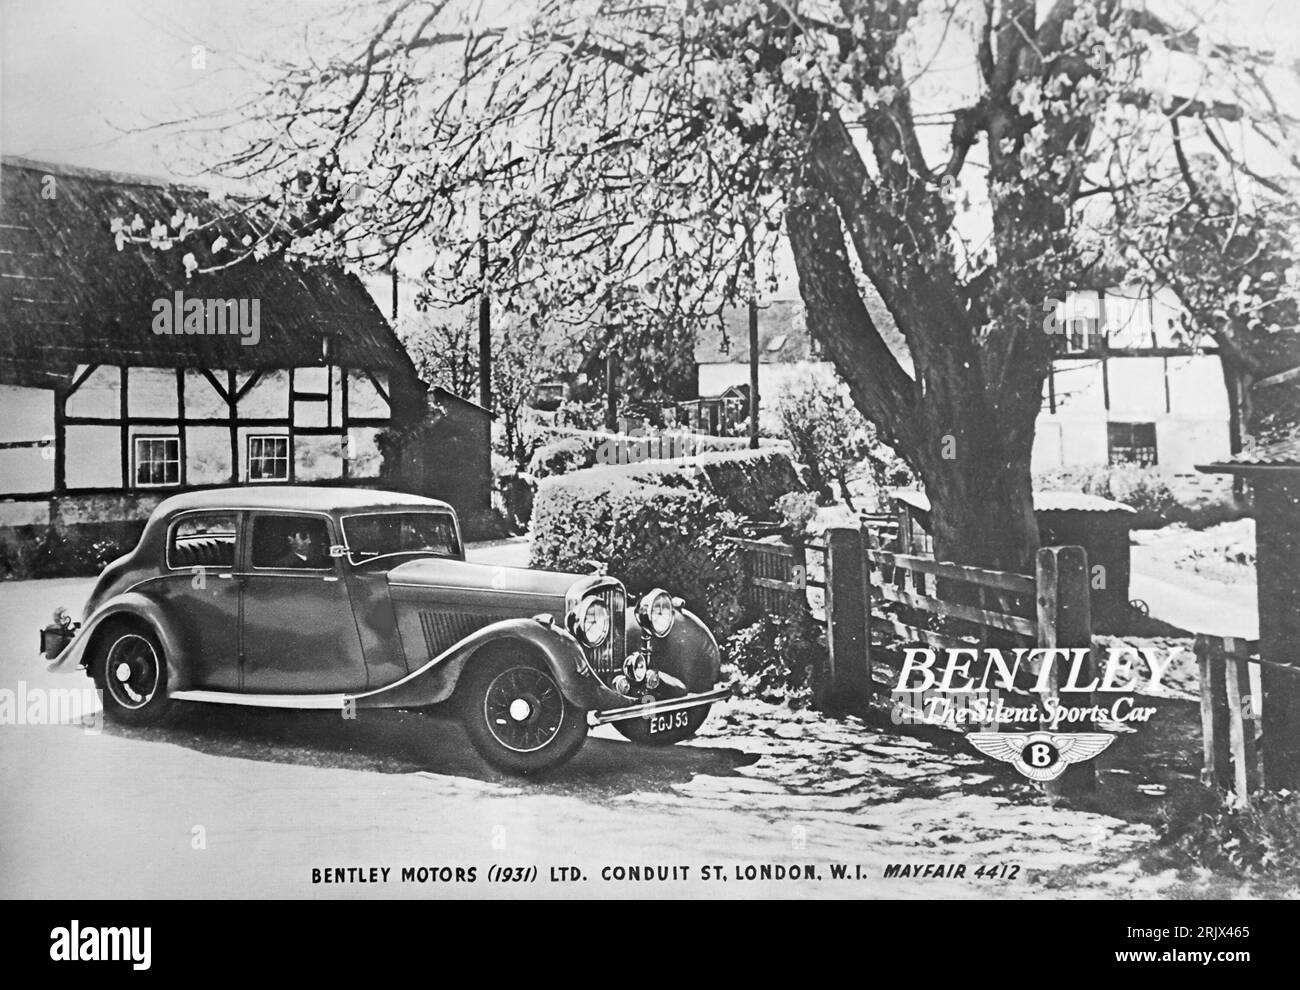 Eine Werbung für Bentley Motors (1931) ltd. Aus dem Jahr 1941. Bentley war und ist Designer und Hersteller von Luxusautos. 1931 befand sich Bentley in finanziellen Schwierigkeiten und wurde von Rolls Royce übernommen. Heute ist Bentley Teil des Volkswagen Konzerns Stockfoto